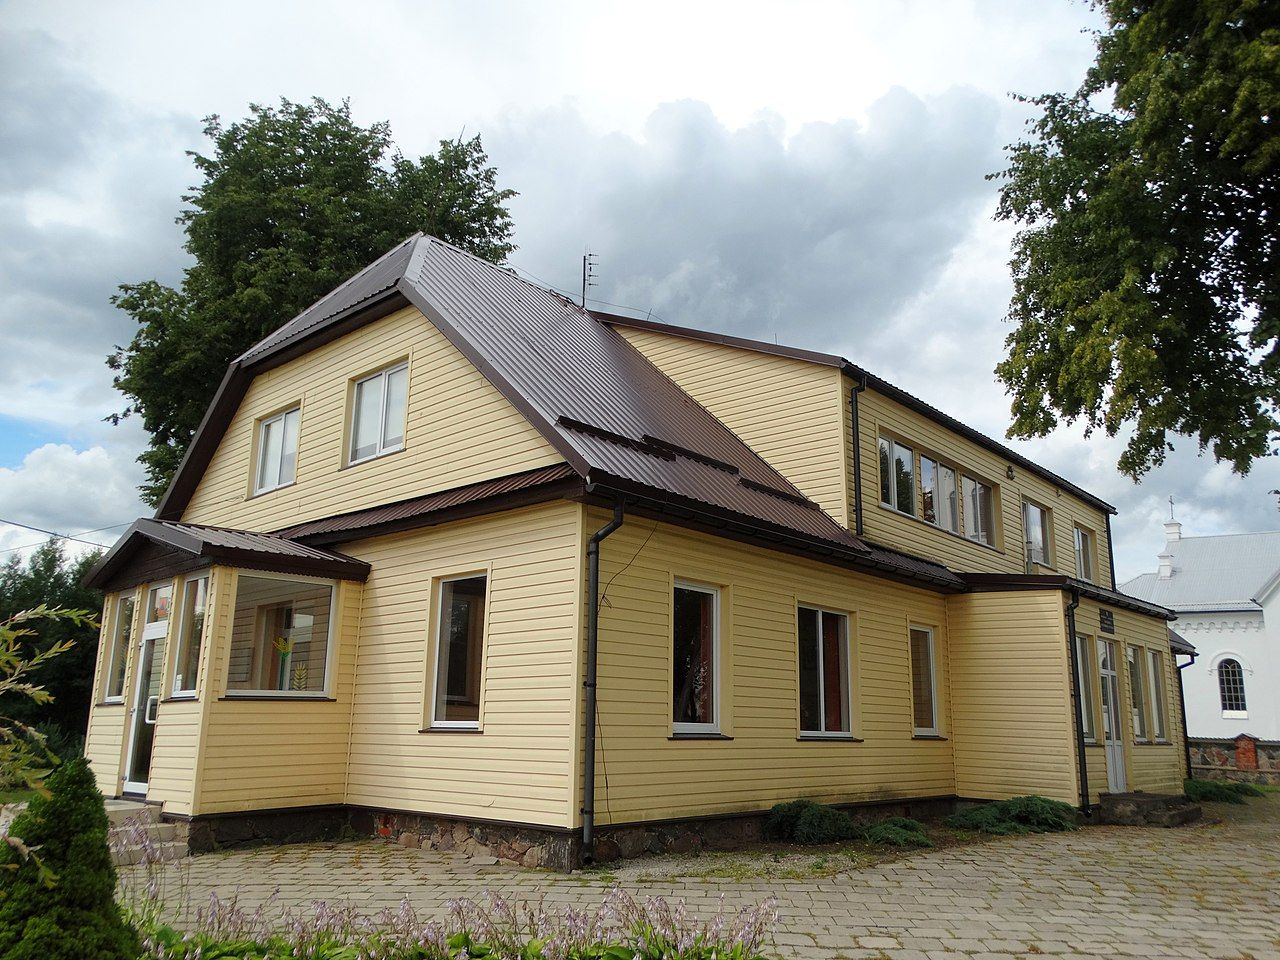 Karsakiškio Strazdelio pagrindinė mokykla